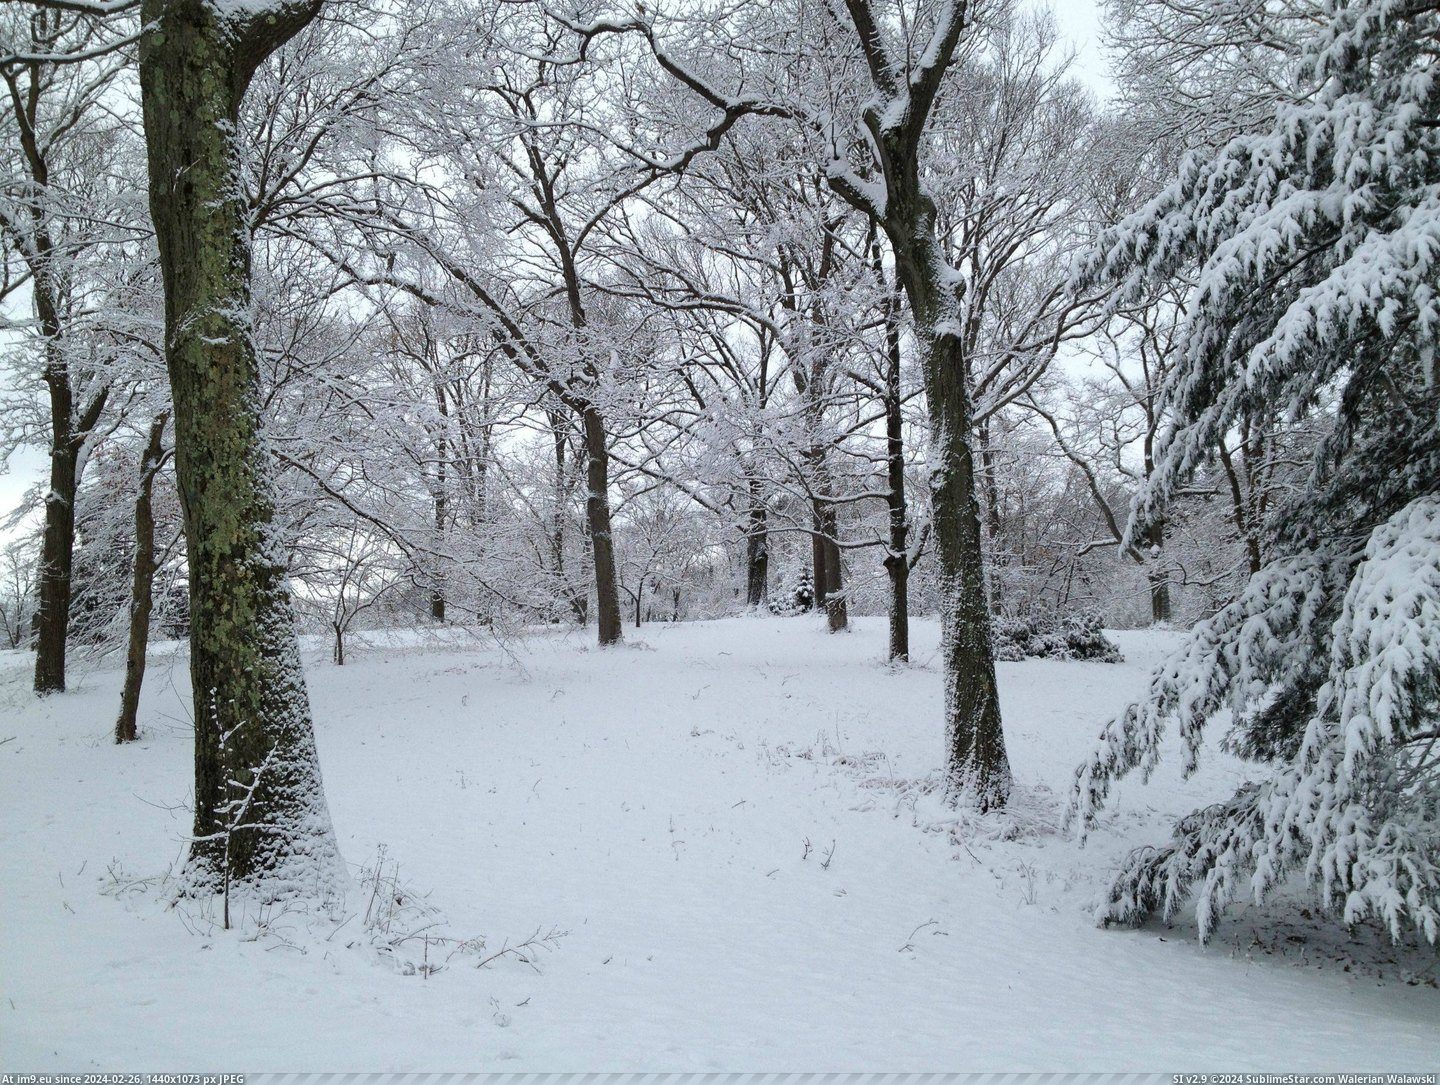 #Winter #Plain #Arboretum #Arnold #Jamaica [Earthporn] Arnold Arboretum in Winter, Jamaica Plain, MA [2448X1836] Pic. (Image of album My r/EARTHPORN favs))